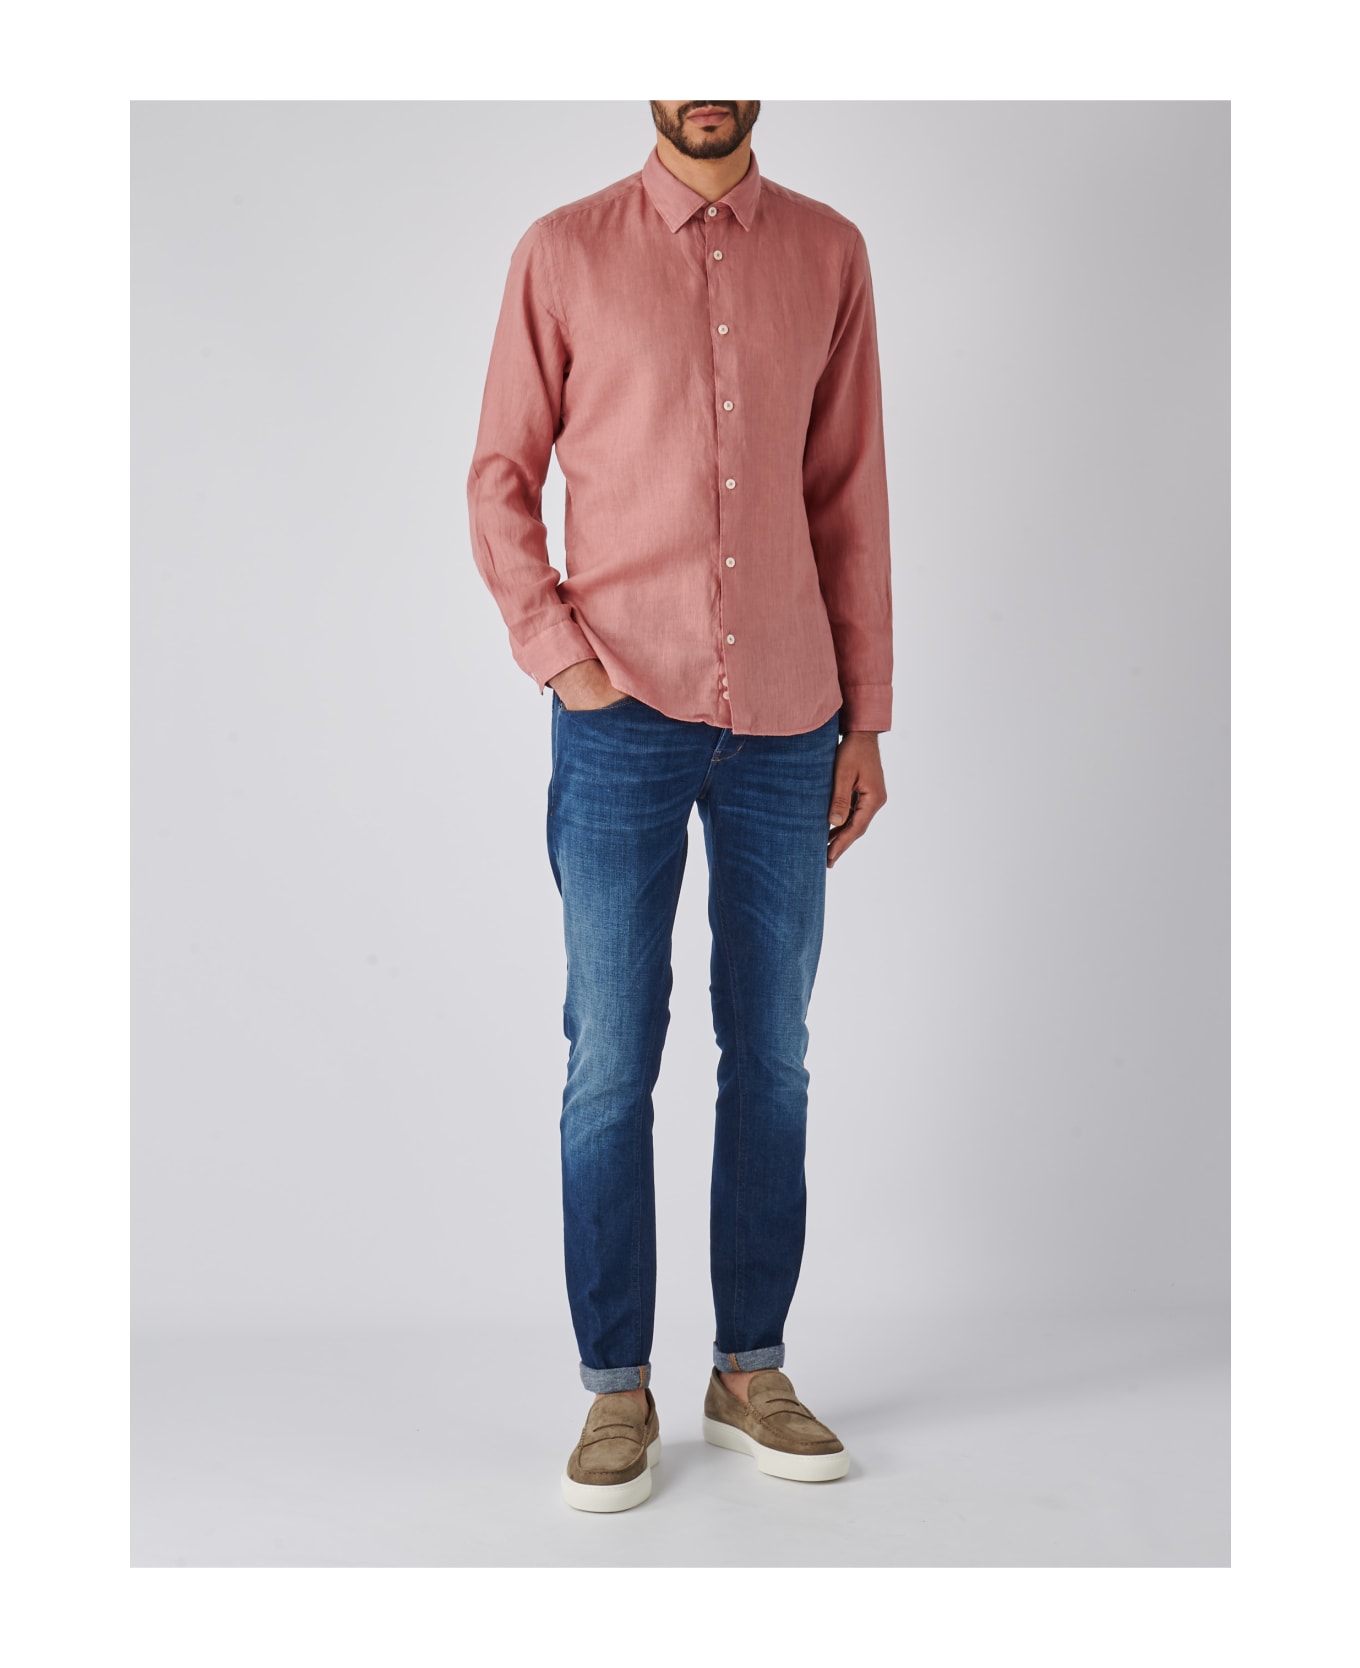 Altea Camicia Uomo Shirt - ROSA ANTICO